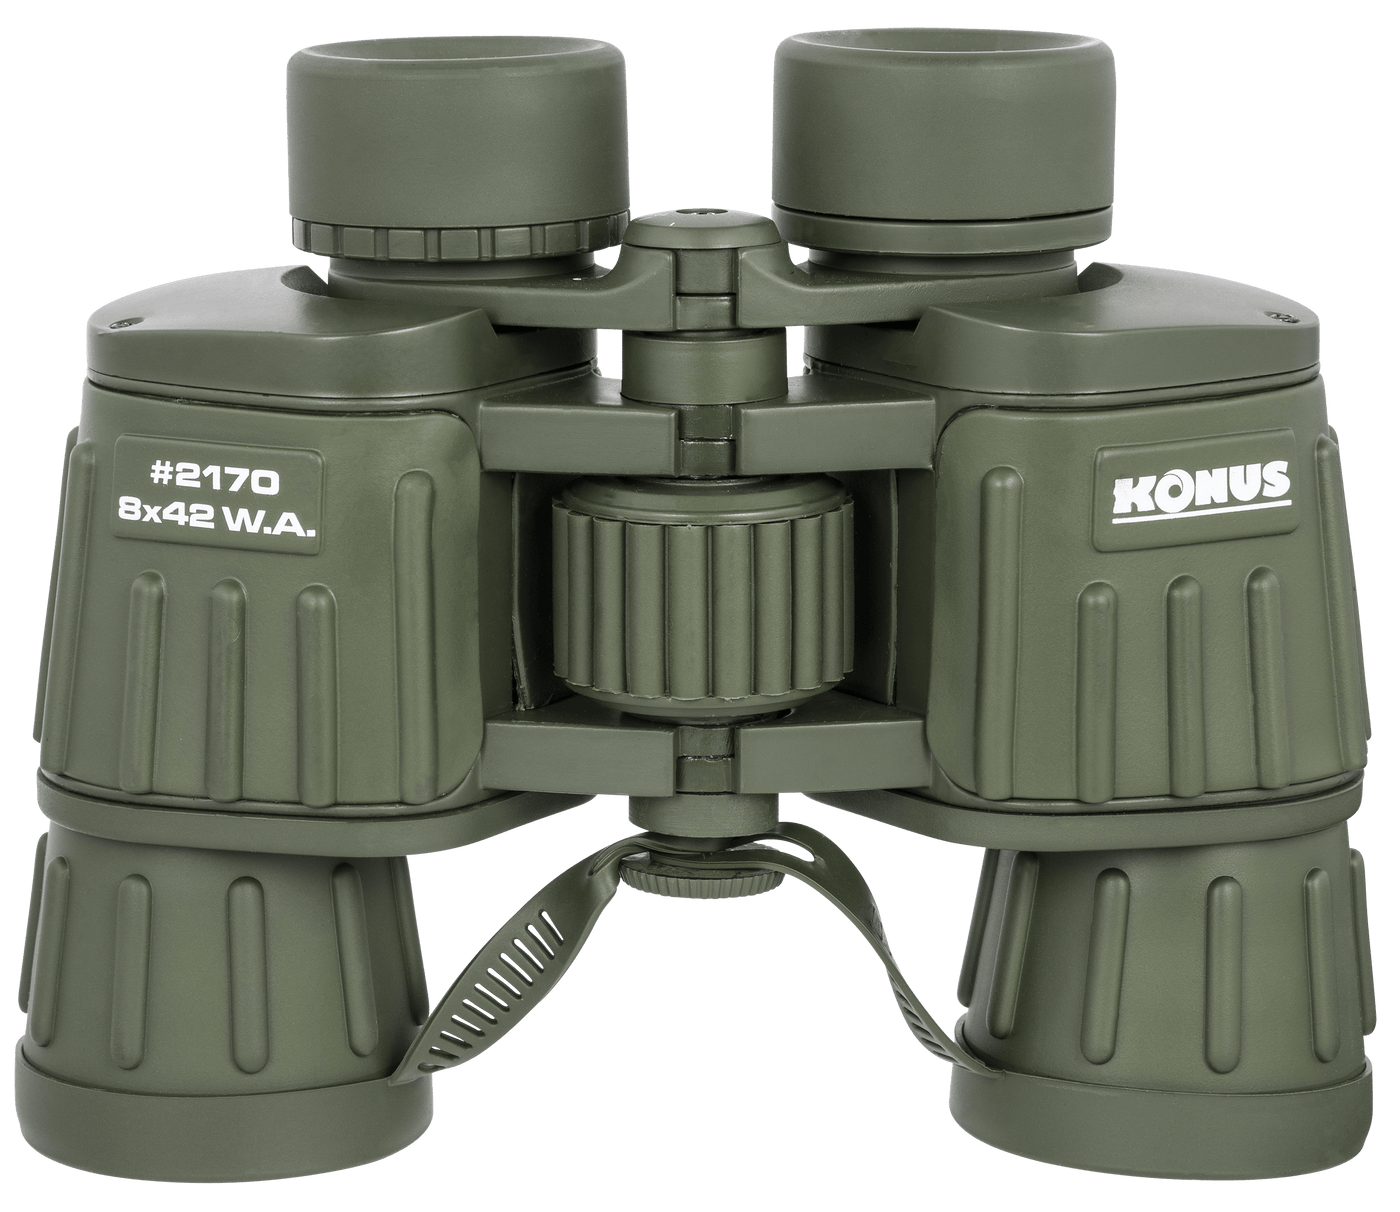 Konus Konus Army, Konus 2170  Army Bak-4 Rubber Armor Wa    8x42 Optics